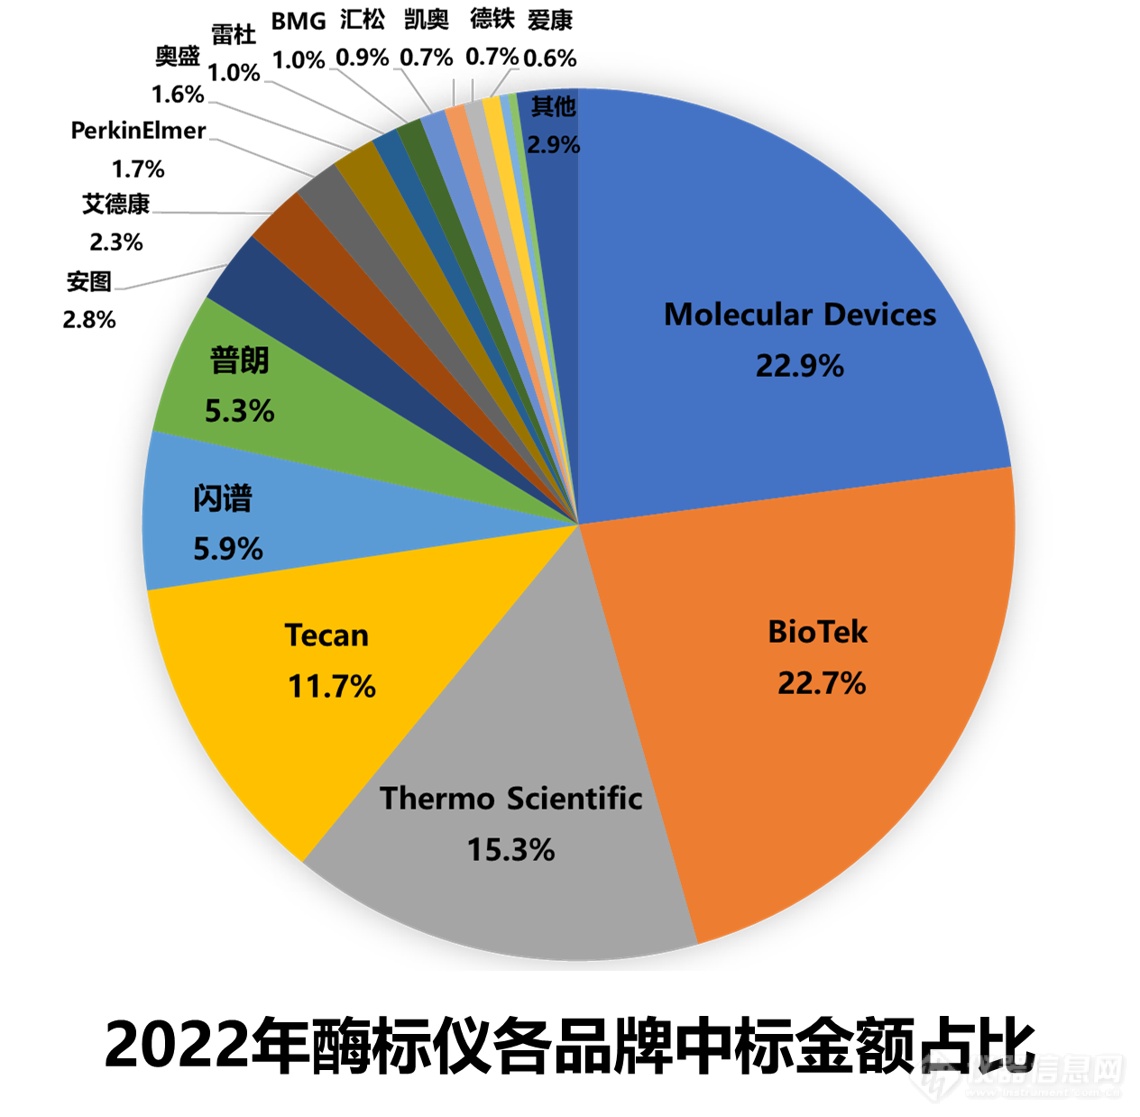 ​2022年酶标仪中标盘点：进口数量竟少于国产，这家国产挺进TOP5